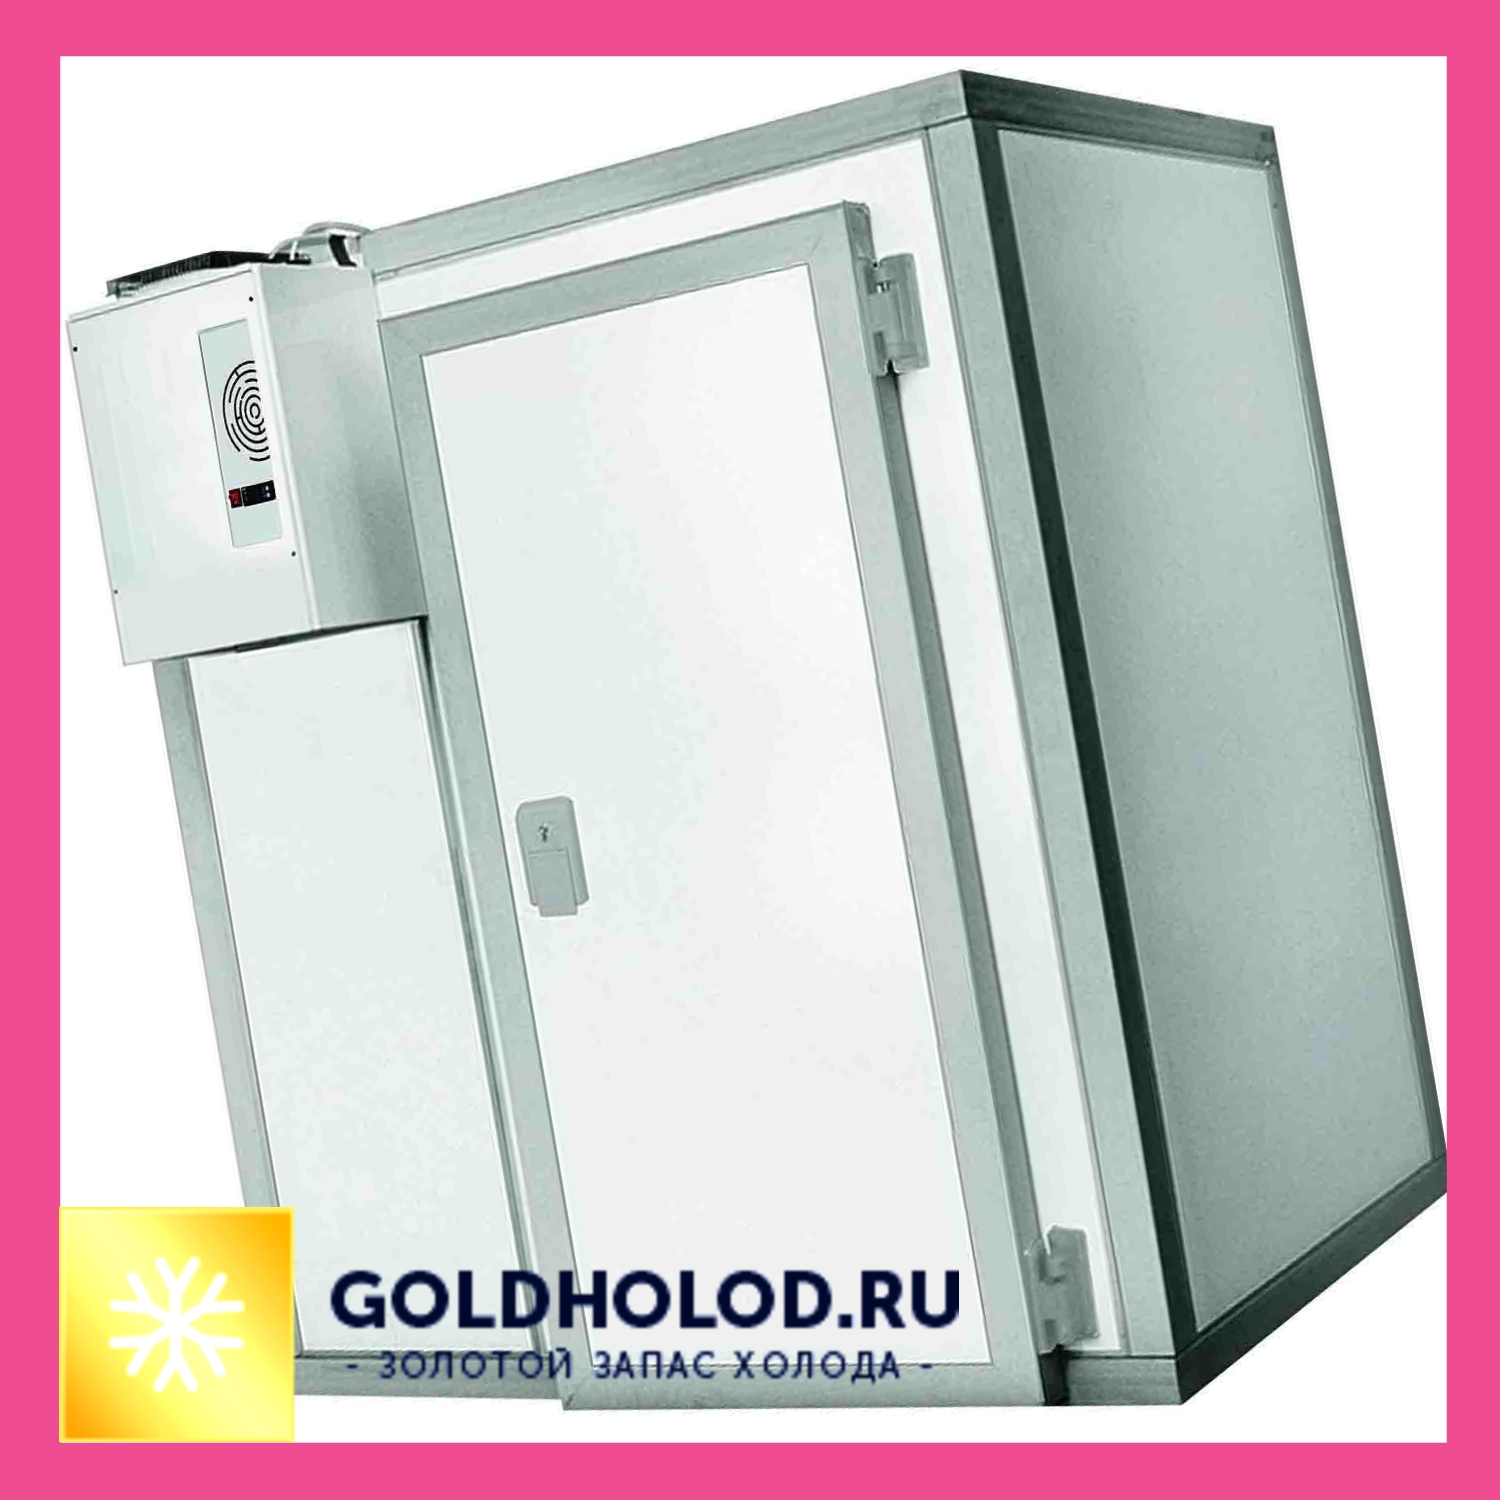 Холодильные камеры с моноблоком – оптимальный выбор для заведений общепита